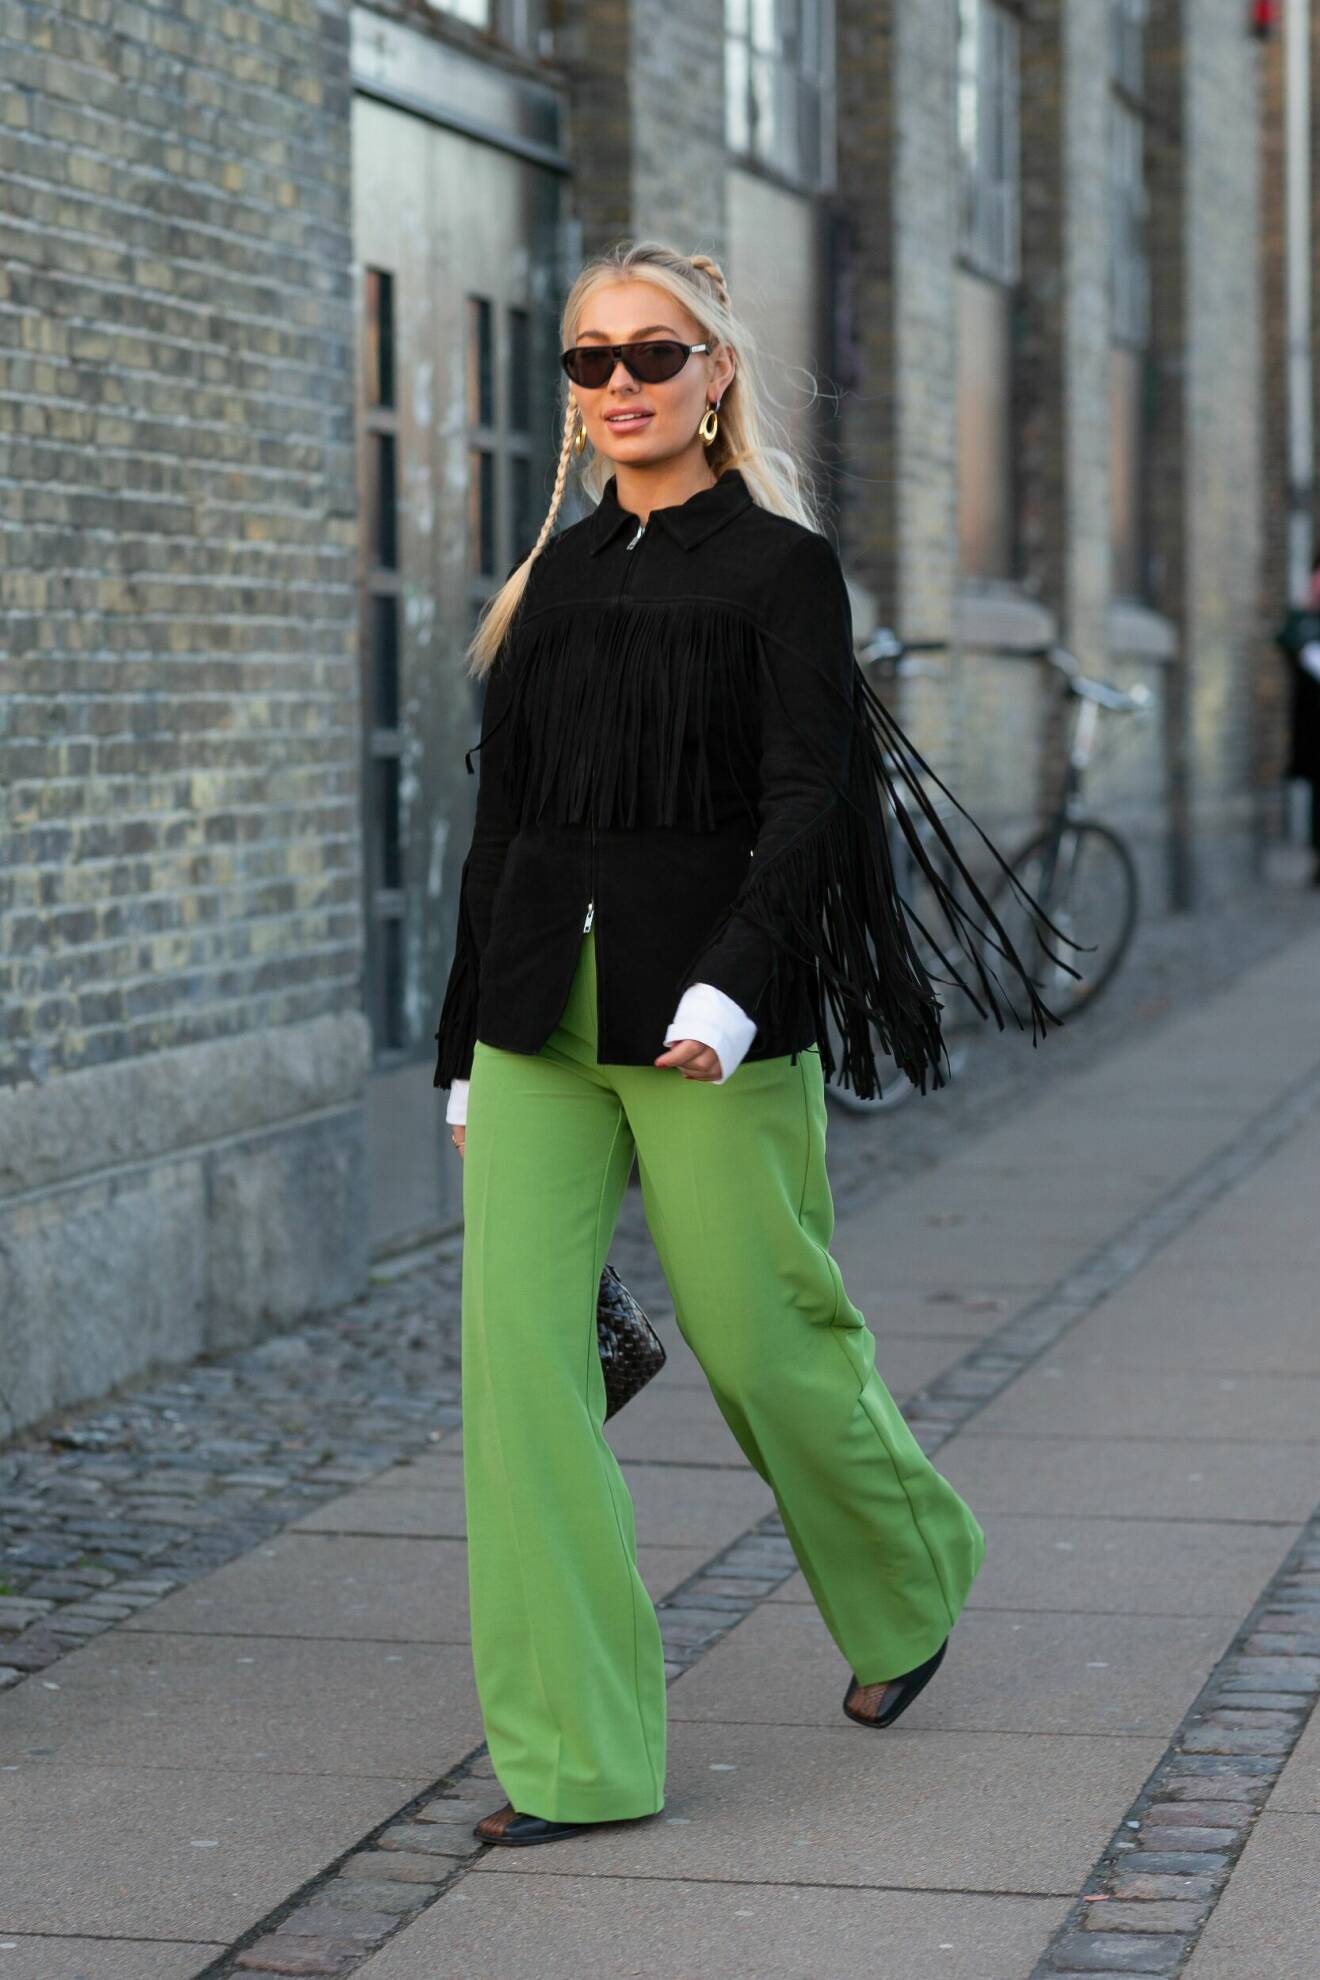 Vida gröna byxor matchad med svart fransjacka på modeveckan i Köpenhamn.